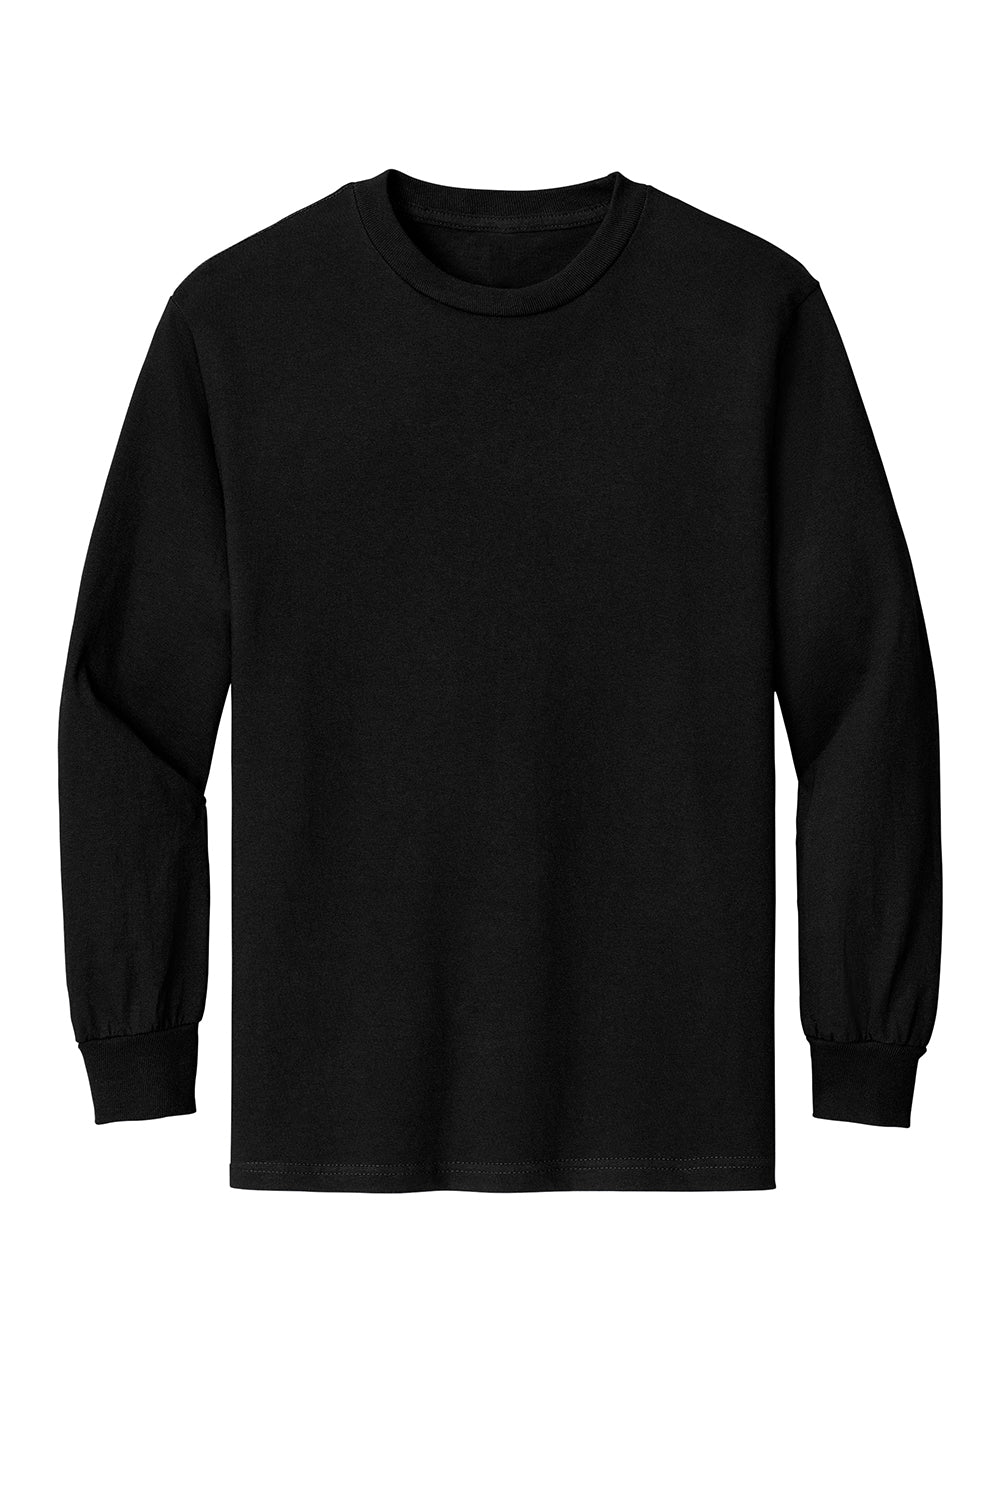 American Apparel AL1304/1304 Mens Long Sleeve Crewneck T-Shirt Black Model Flat Front